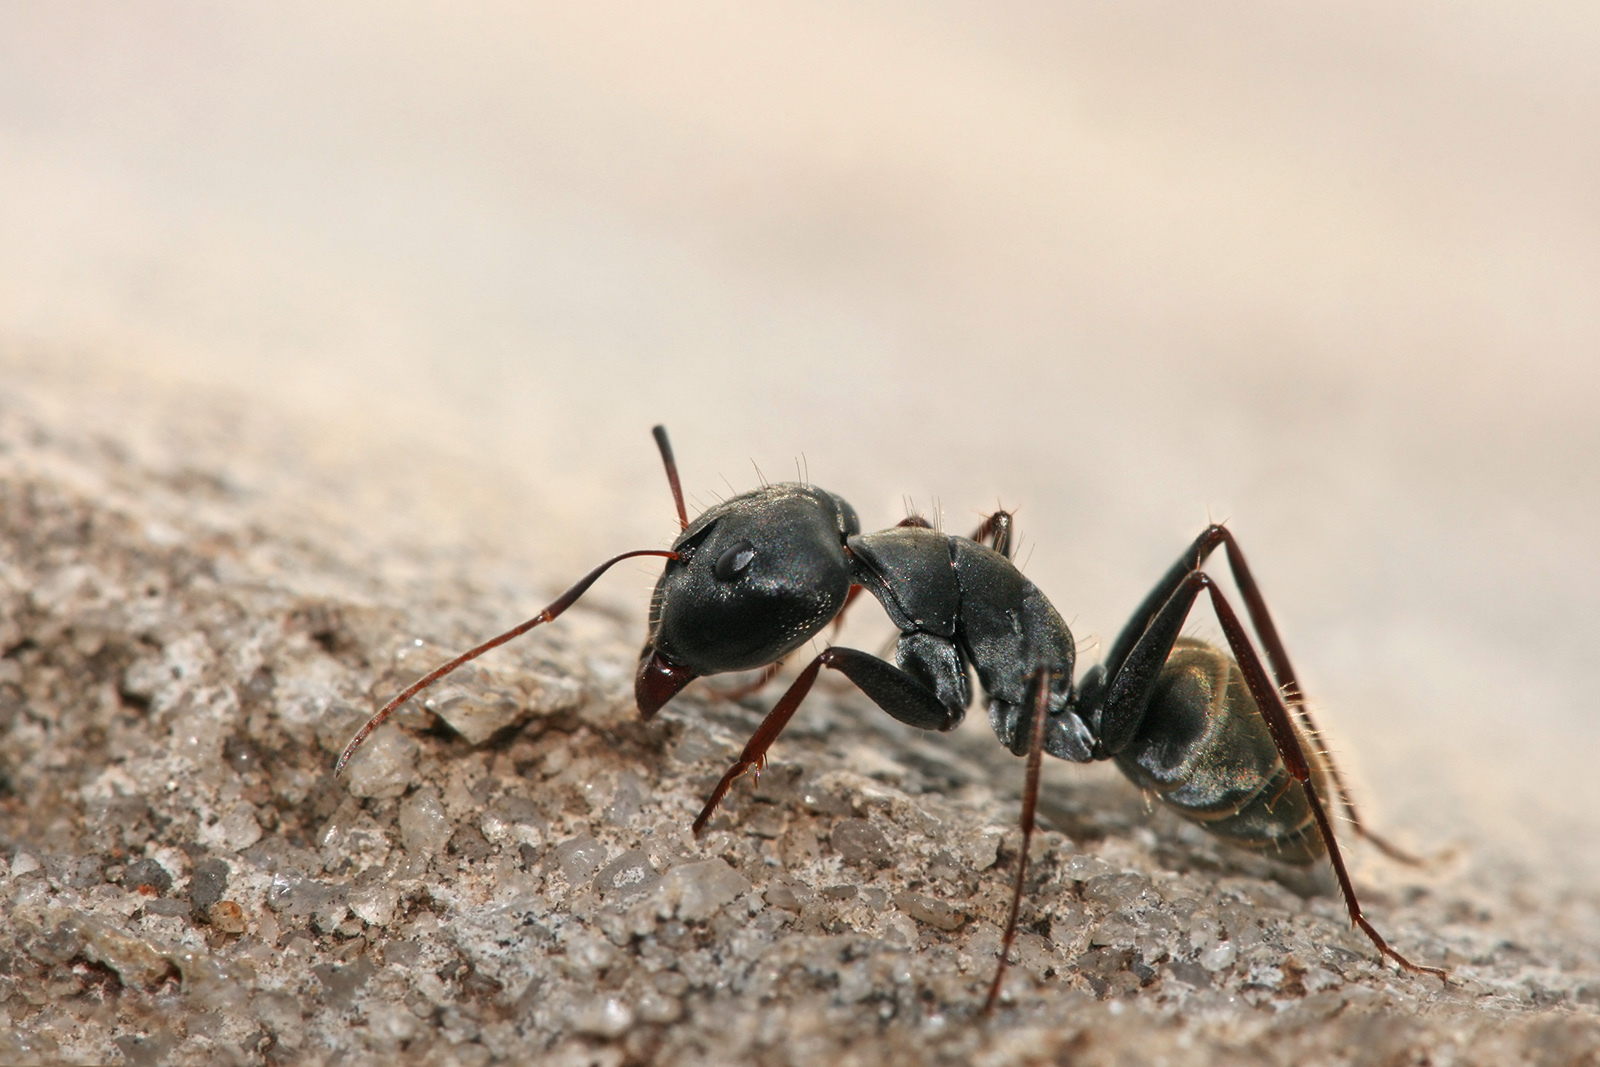 Hallan en las sociedades de hormigas pistas de cundo y por qu disminuy el tamao del cerebro humano hace 3.000 aos